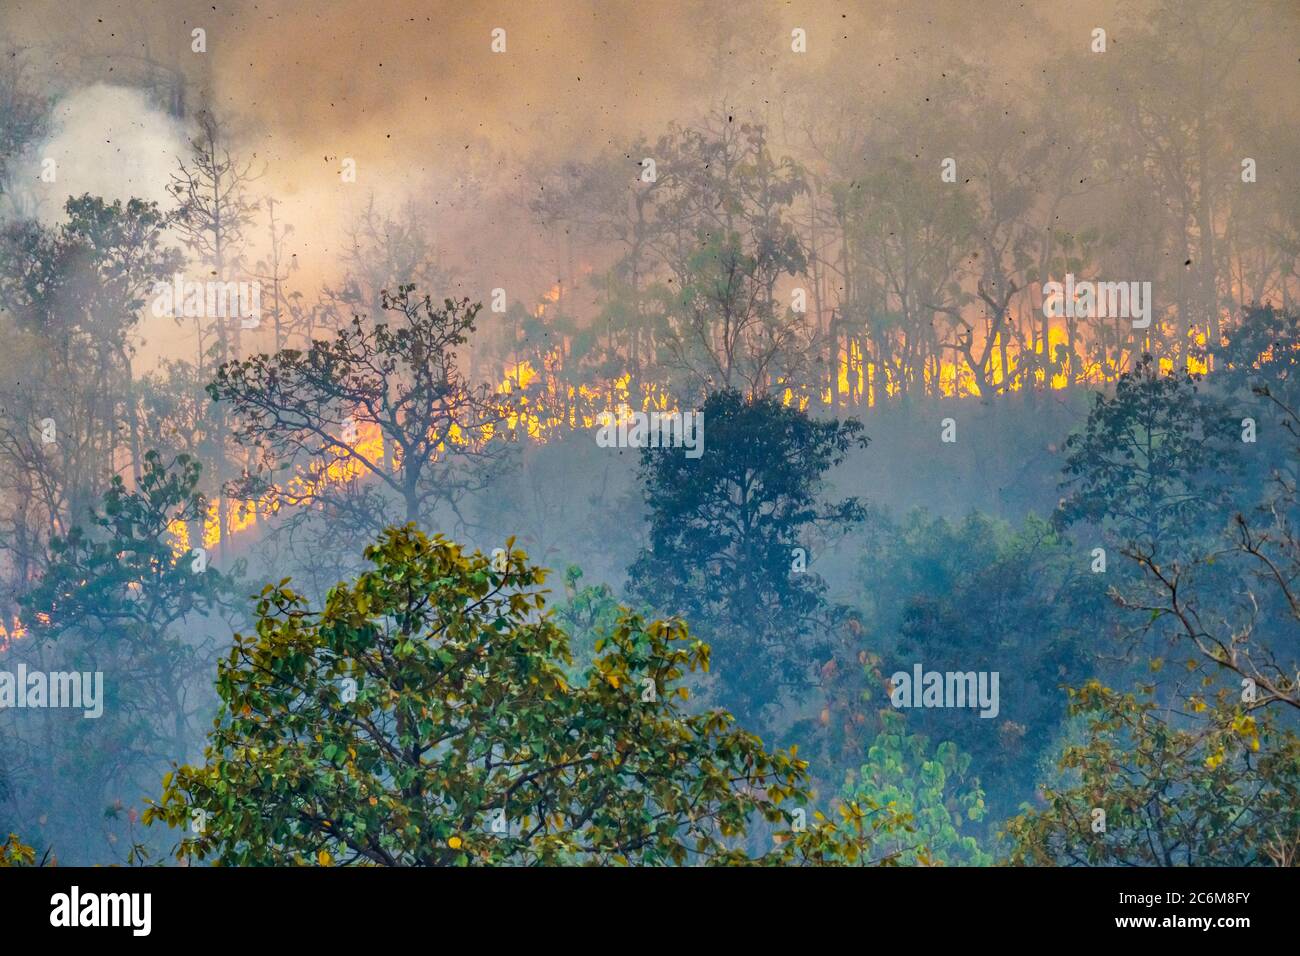 Pioggia foresta il disastro di fuoco è bruciato causato da esseri umani Foto Stock